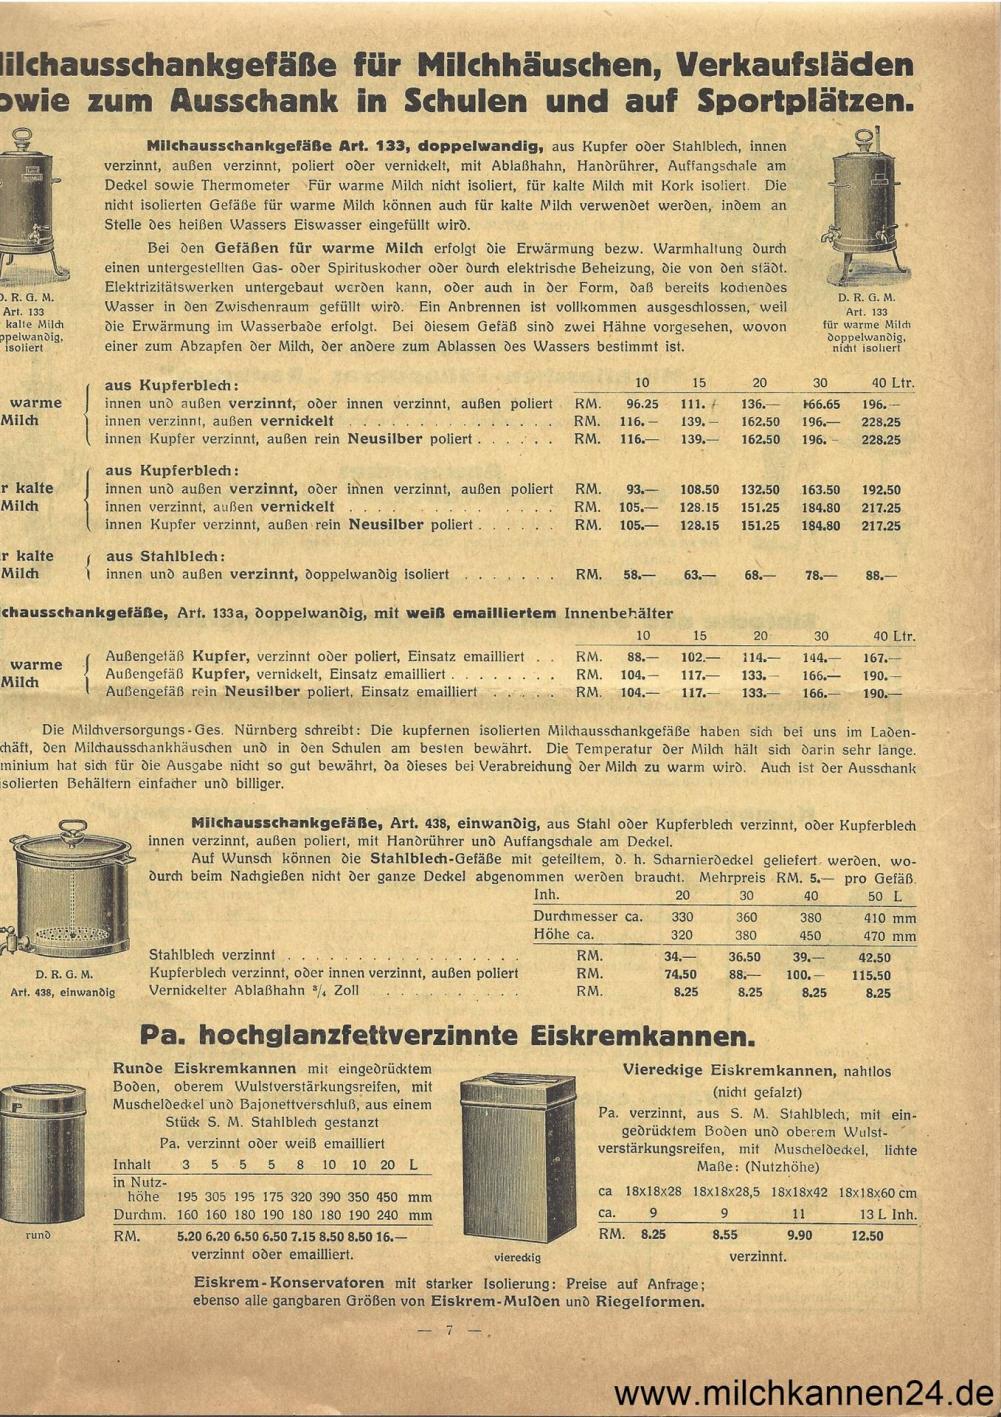 Georg Sindermann Preisliste 1930, Seite 7. Schwerpunkte: Milchausschankgefäße, Eiskremkannen und mehr